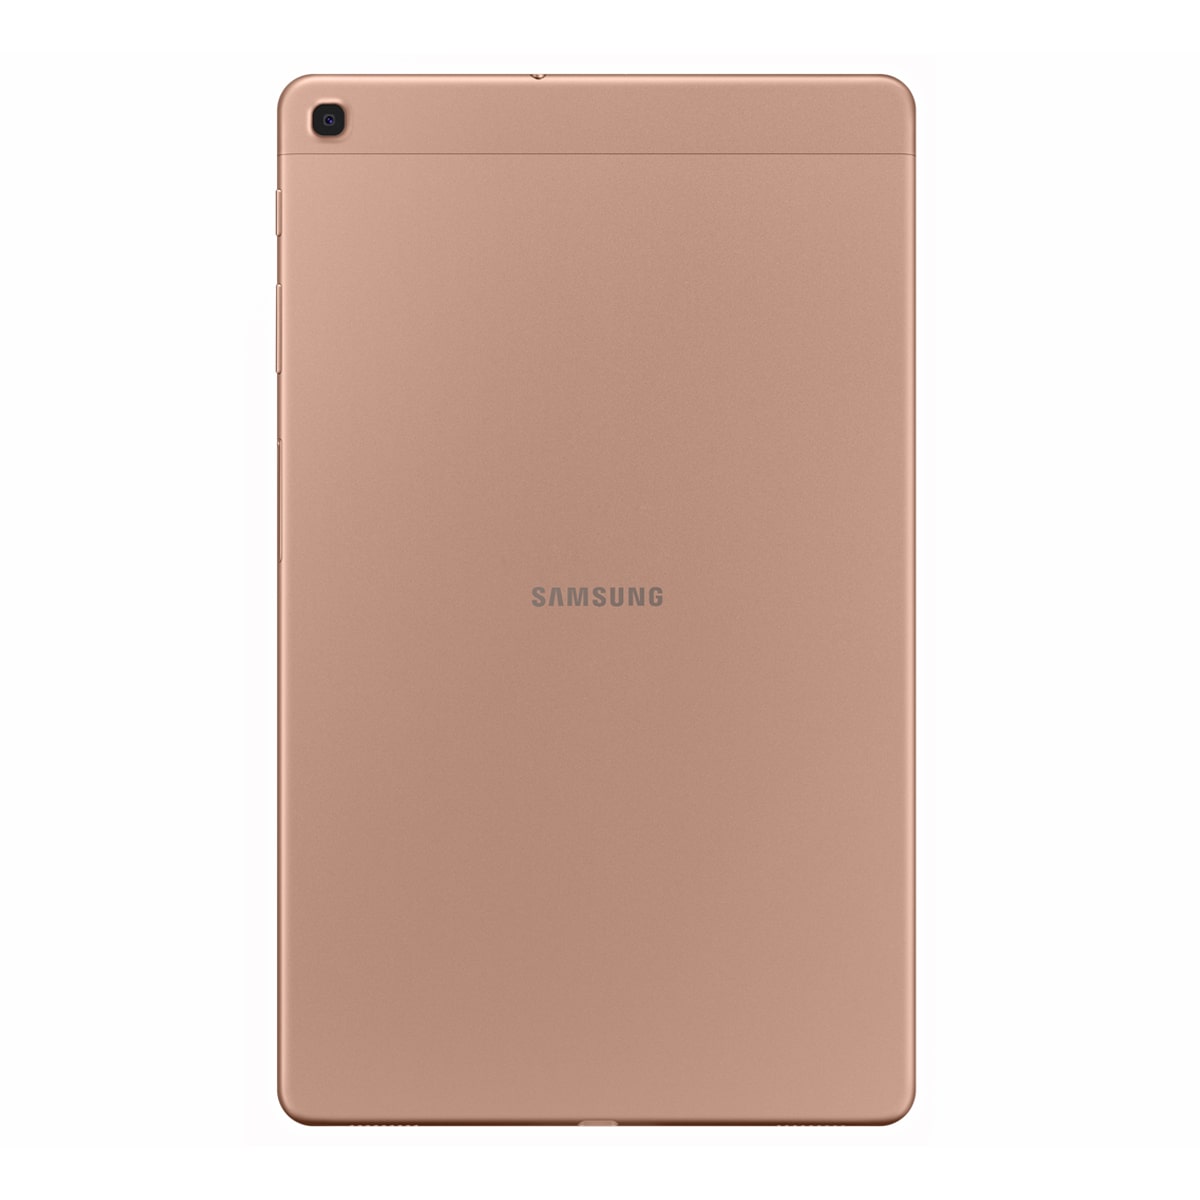 تبلت سامسونگ مدل Galaxy TAB A 10.1 2019 LTE T515 ظرفیت 32 گیگابایت